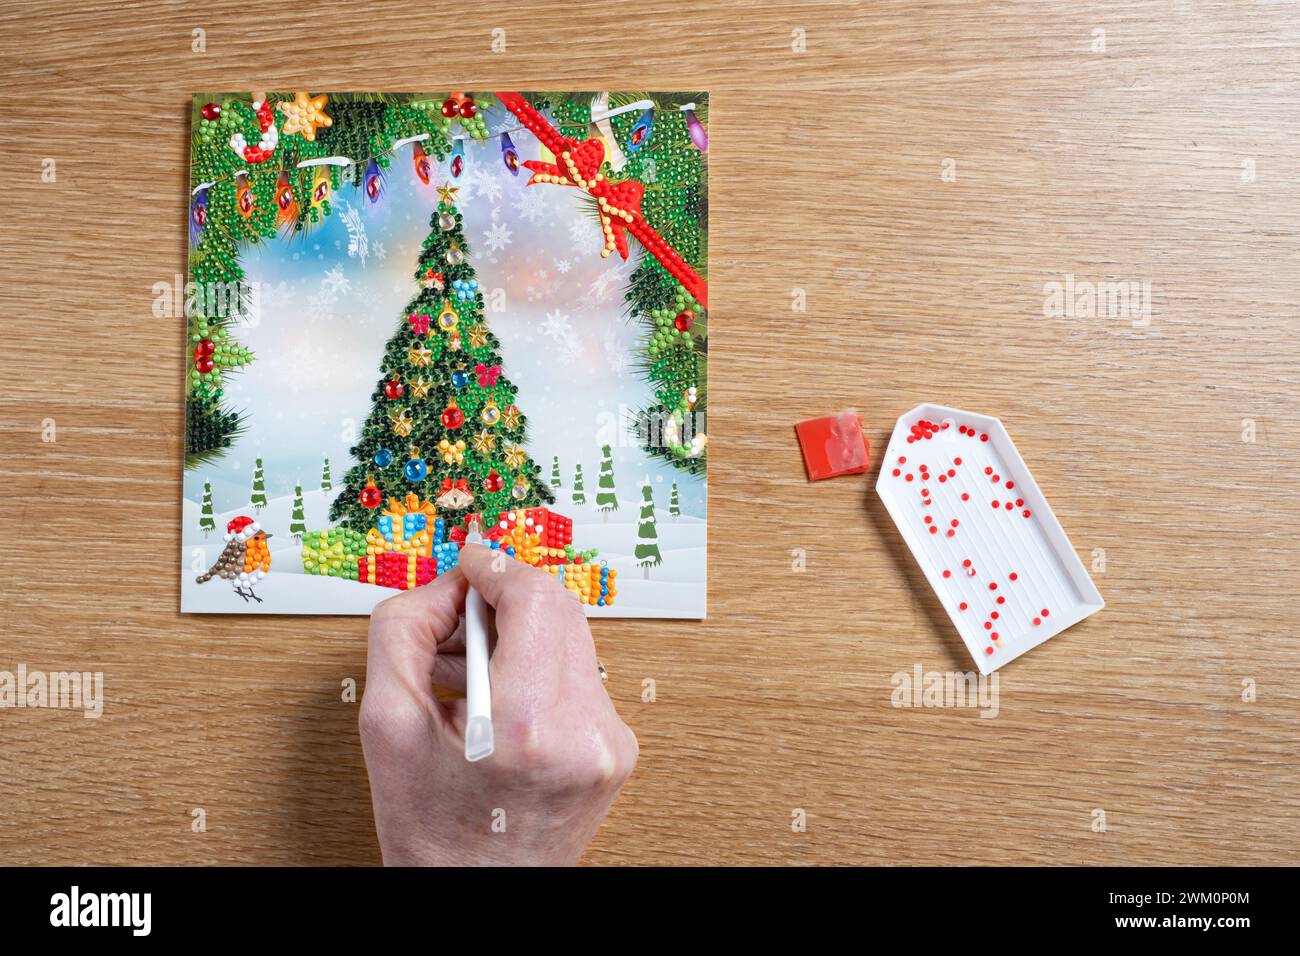 Une femme utilisant un stylo magique pour fixer de petits cristaux ou des diamants à une carte de Noël DIY. Les cristaux colorés sont collés sur une carte adhésive Banque D'Images